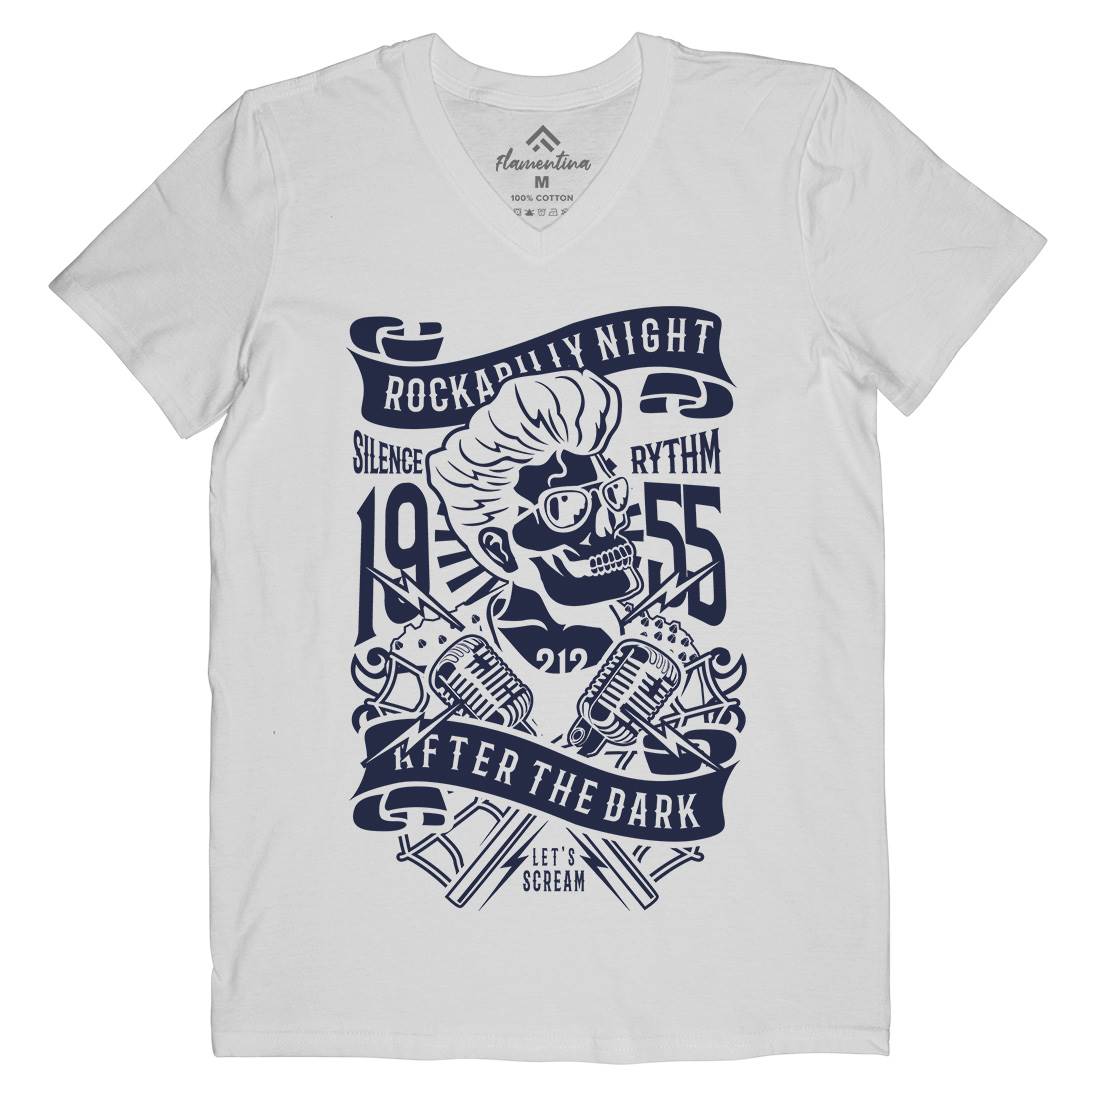 Rockabilly Night Mens Organic V-Neck T-Shirt Music B249